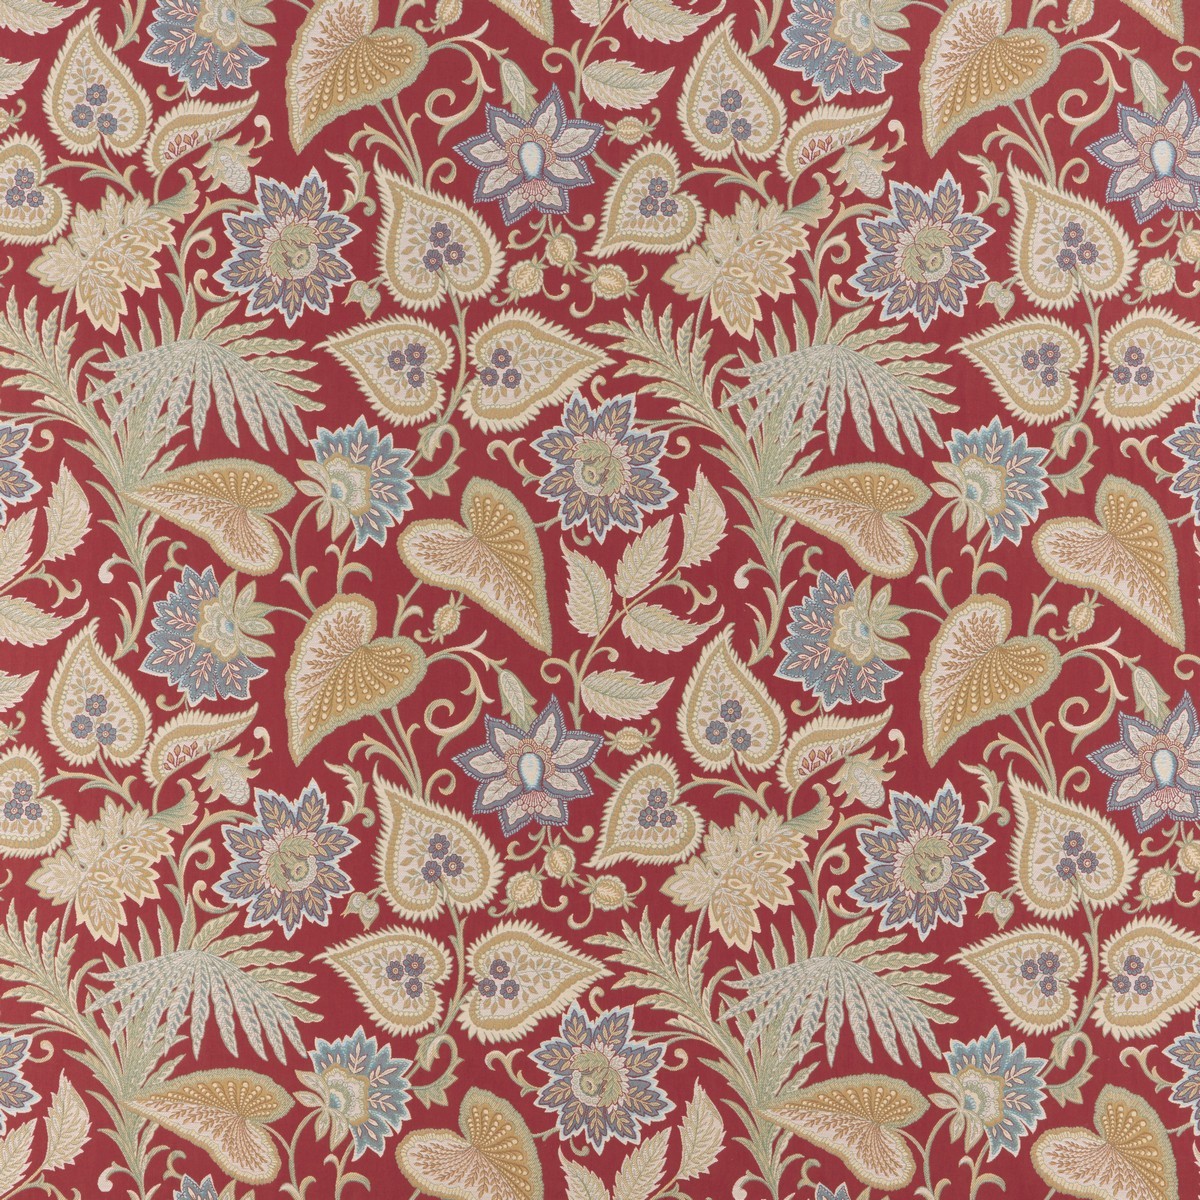 Morris XVIII Fabric by Britannia Rose